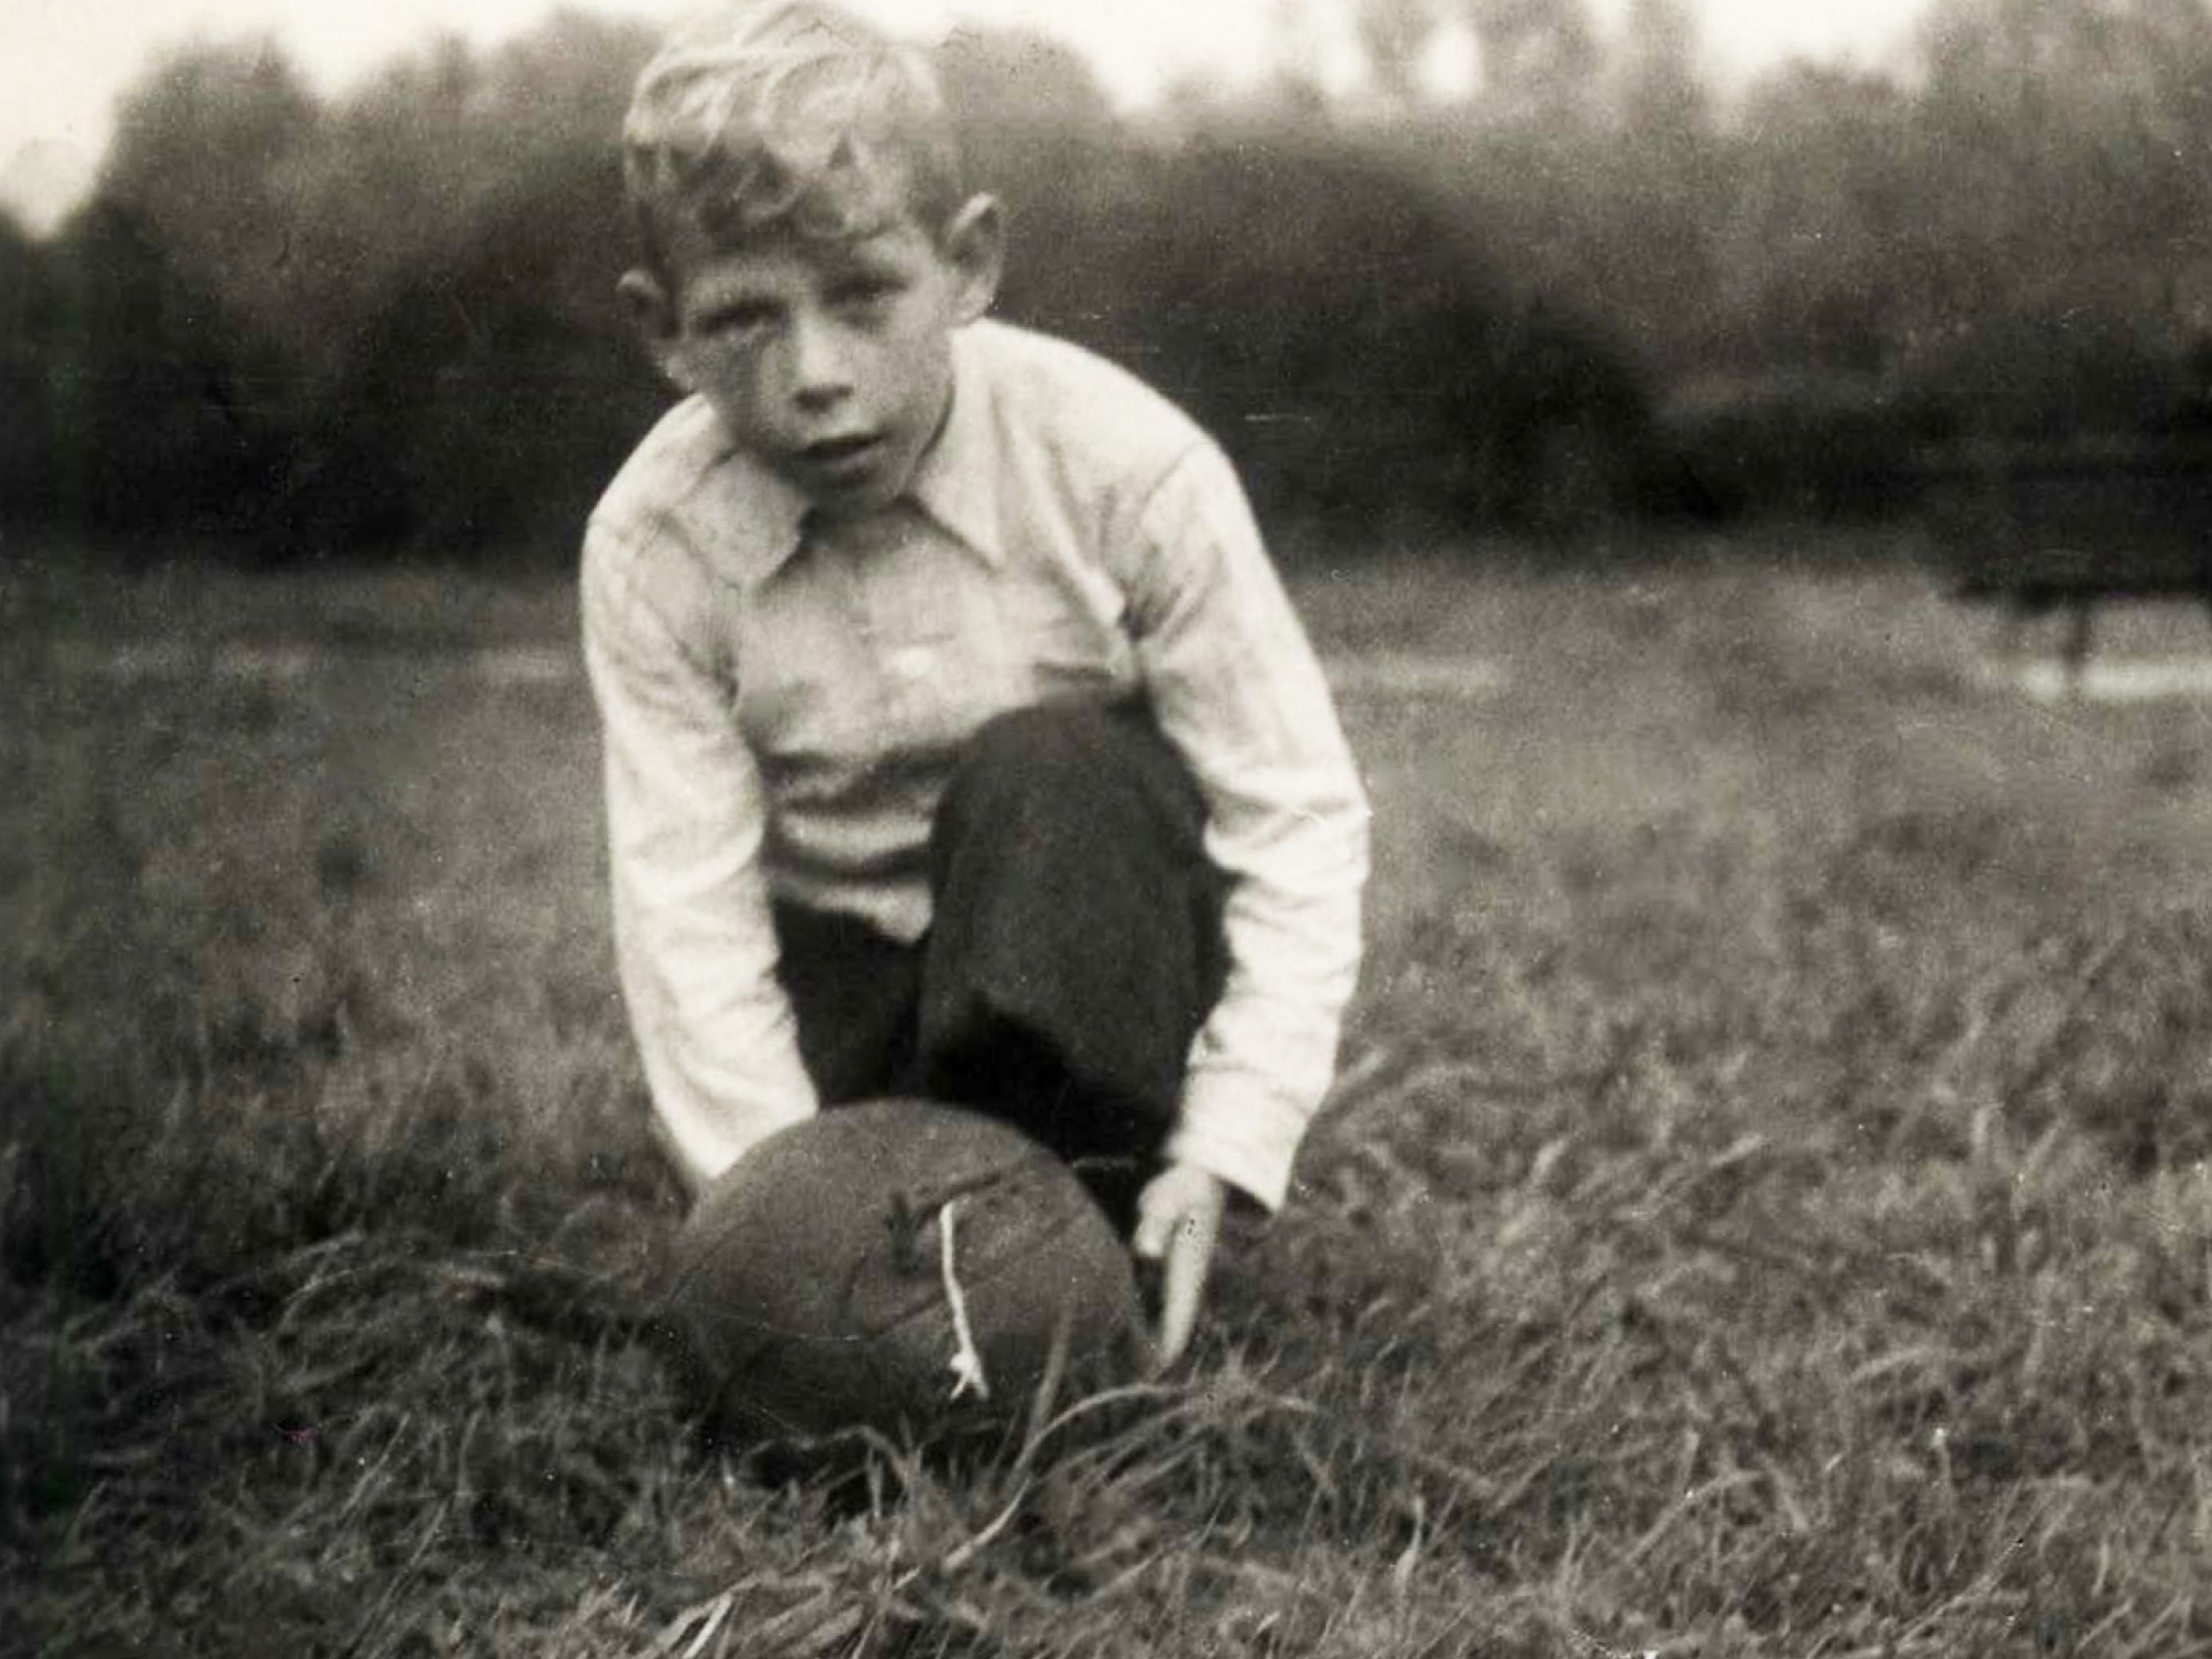 Kinderfoto von Paul Crutzen. Er kniet auf der Wiese. Vor ihm liegt ein Fußball.